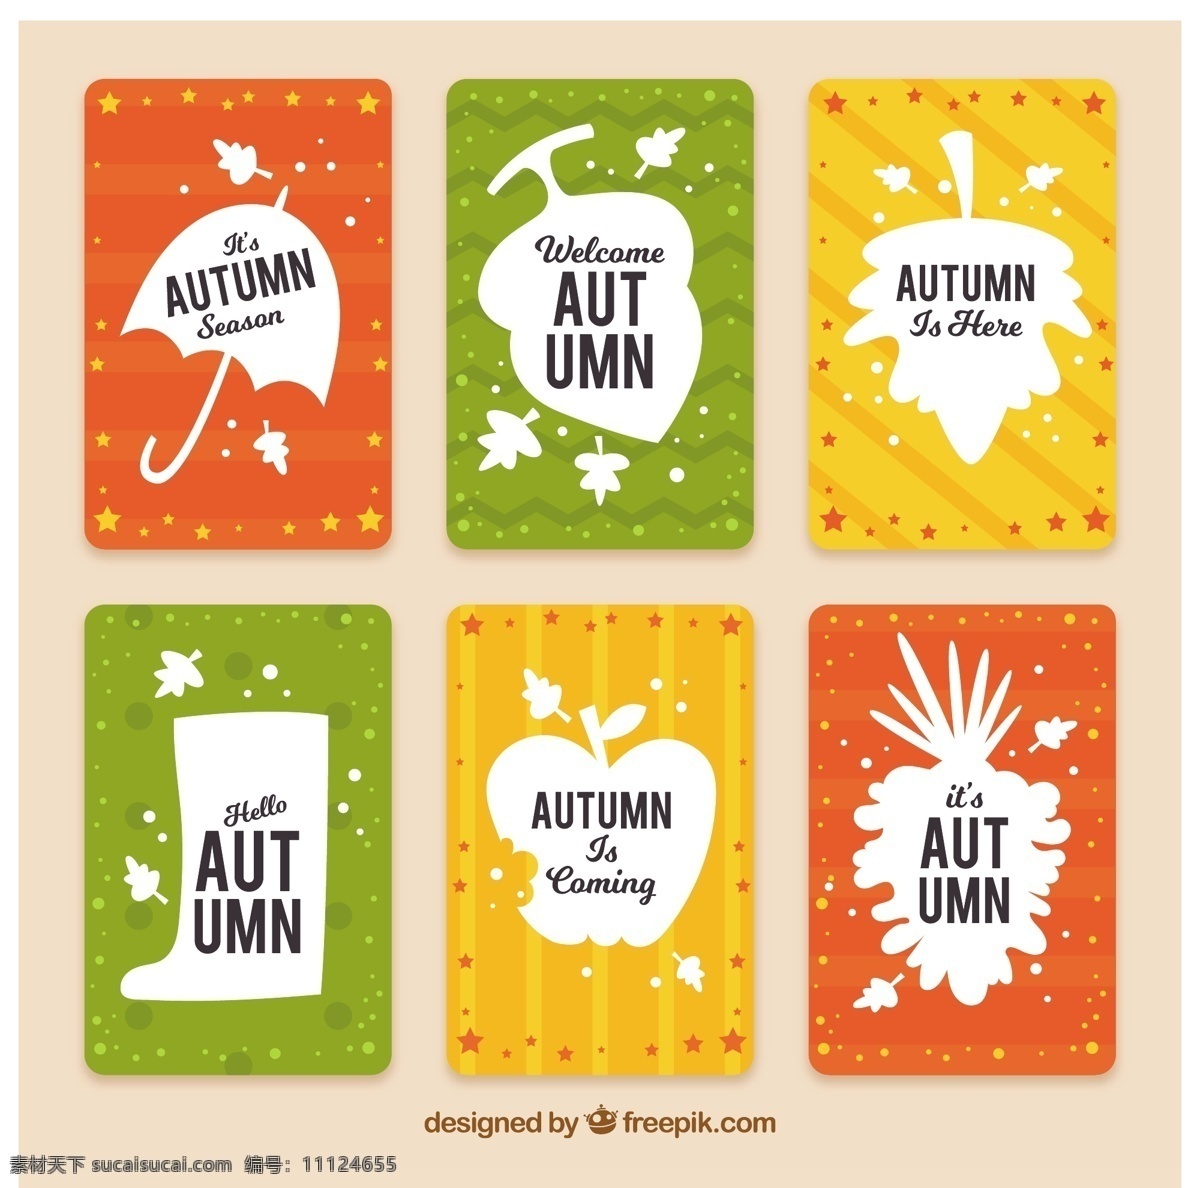 一套秋季纸牌 贺卡 模板 树叶 自然 可爱 秋天 五颜六色 苹果 平 伞 树 平面设计 娱乐 酷